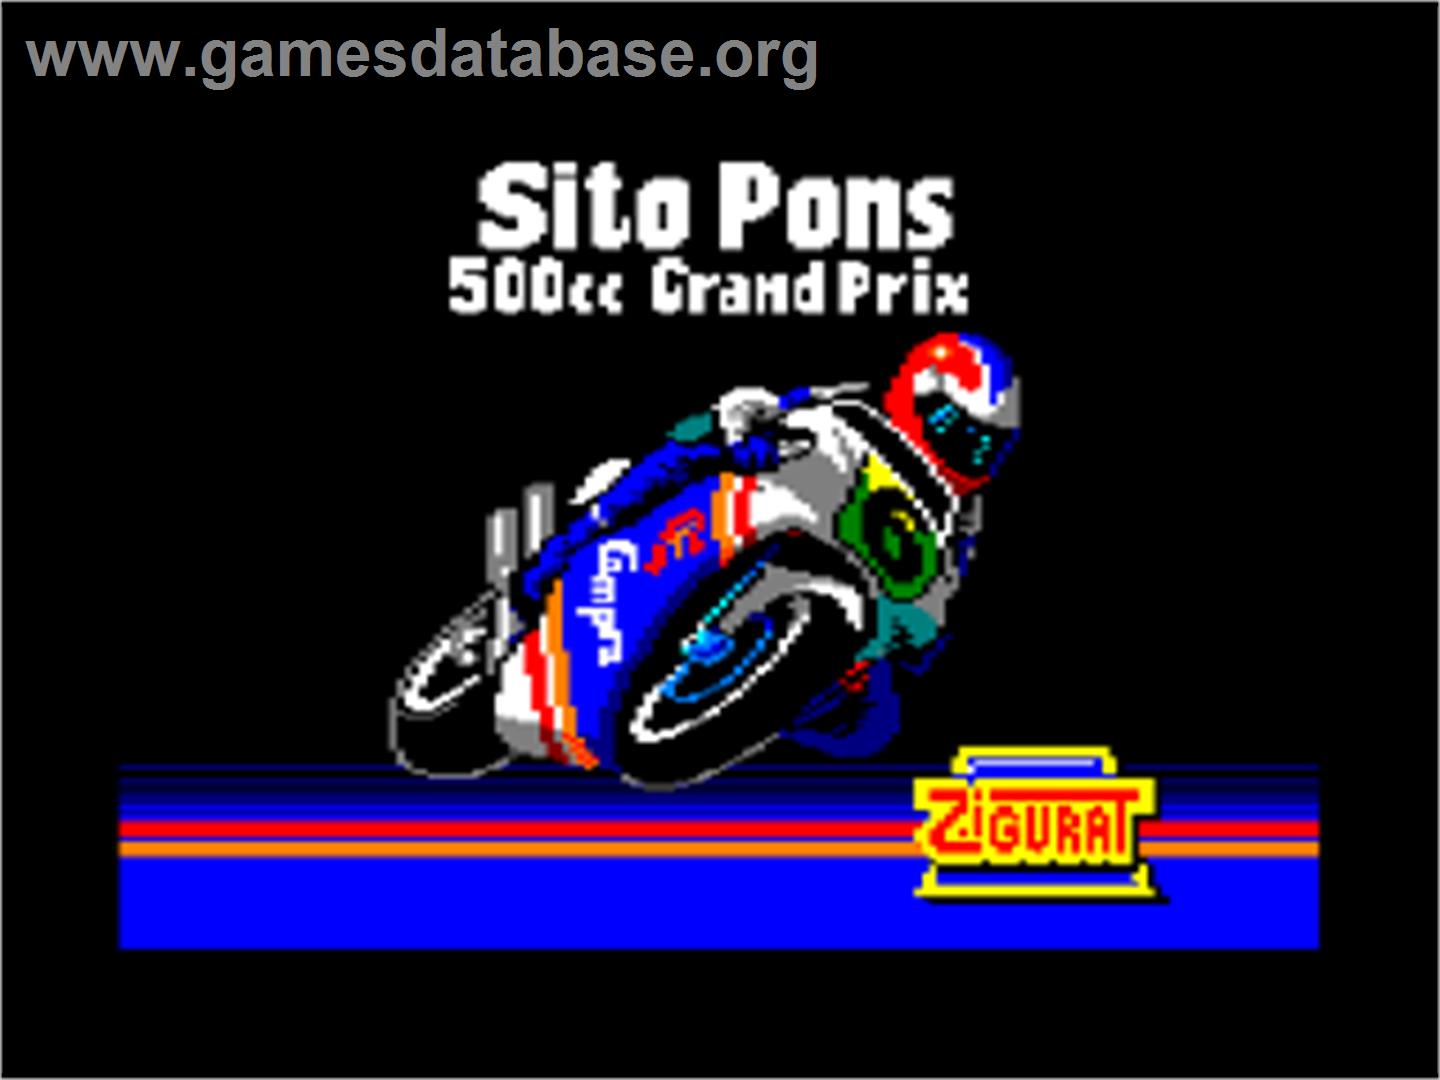 Sito Pons 500cc Grand Prix - Amstrad CPC - Artwork - Title Screen